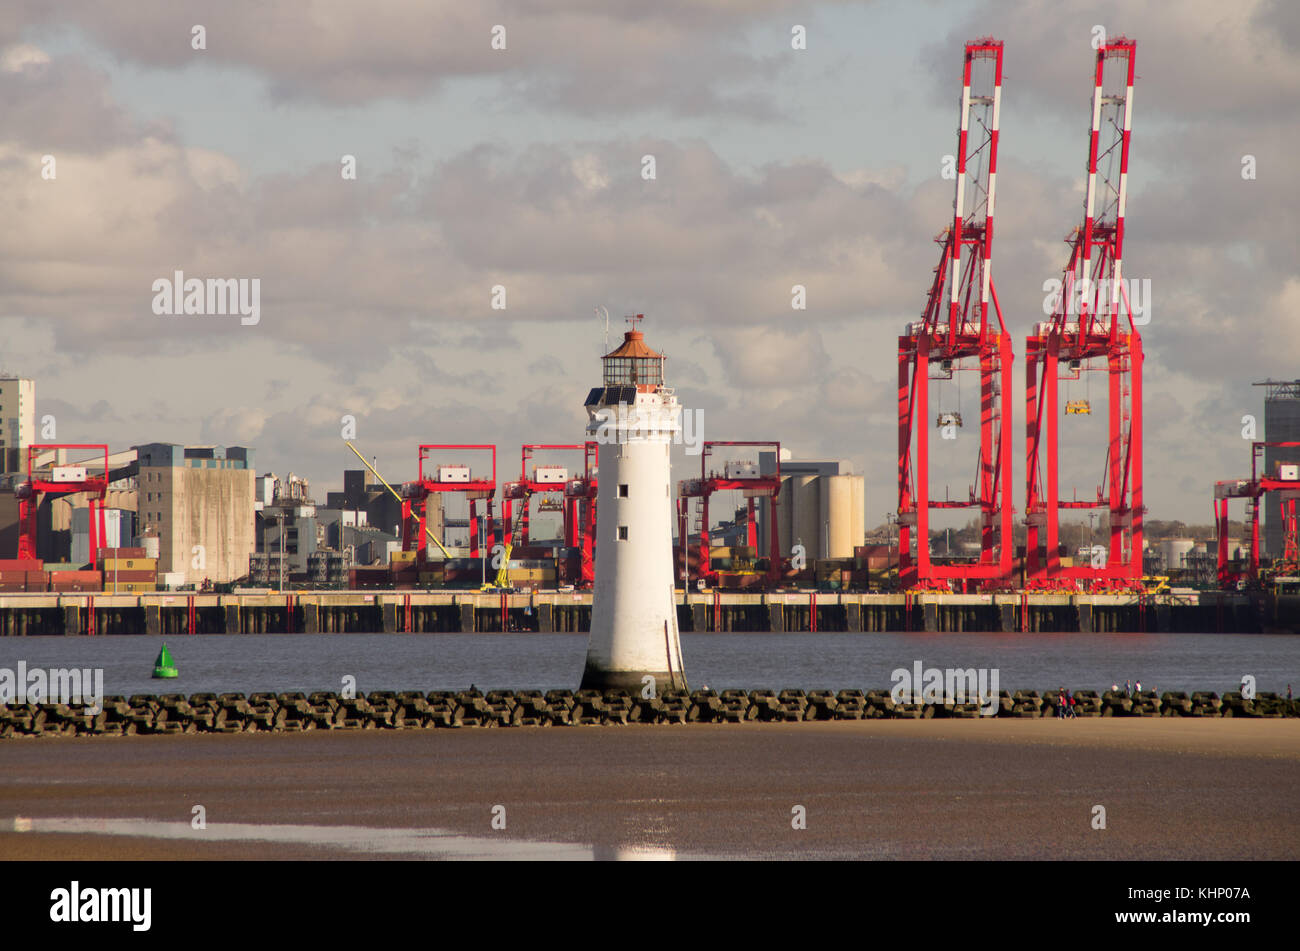 Royal Seaforth Dock Liverpool e il persico Rock lighthouse New Brighton Foto Stock